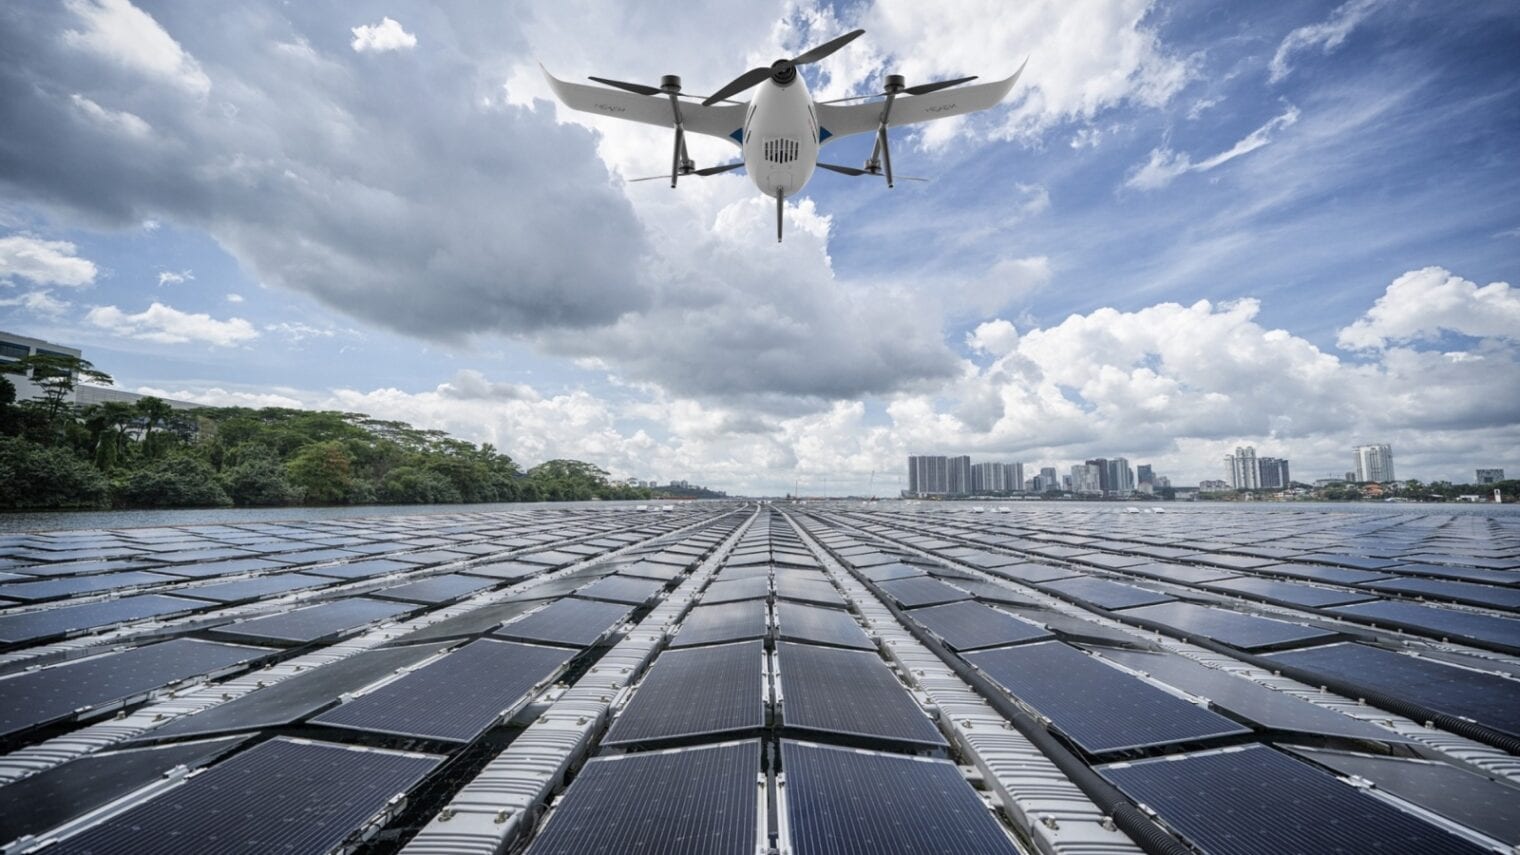 A Heven drone over a solar farm. Photo courtesy of HevenDrones